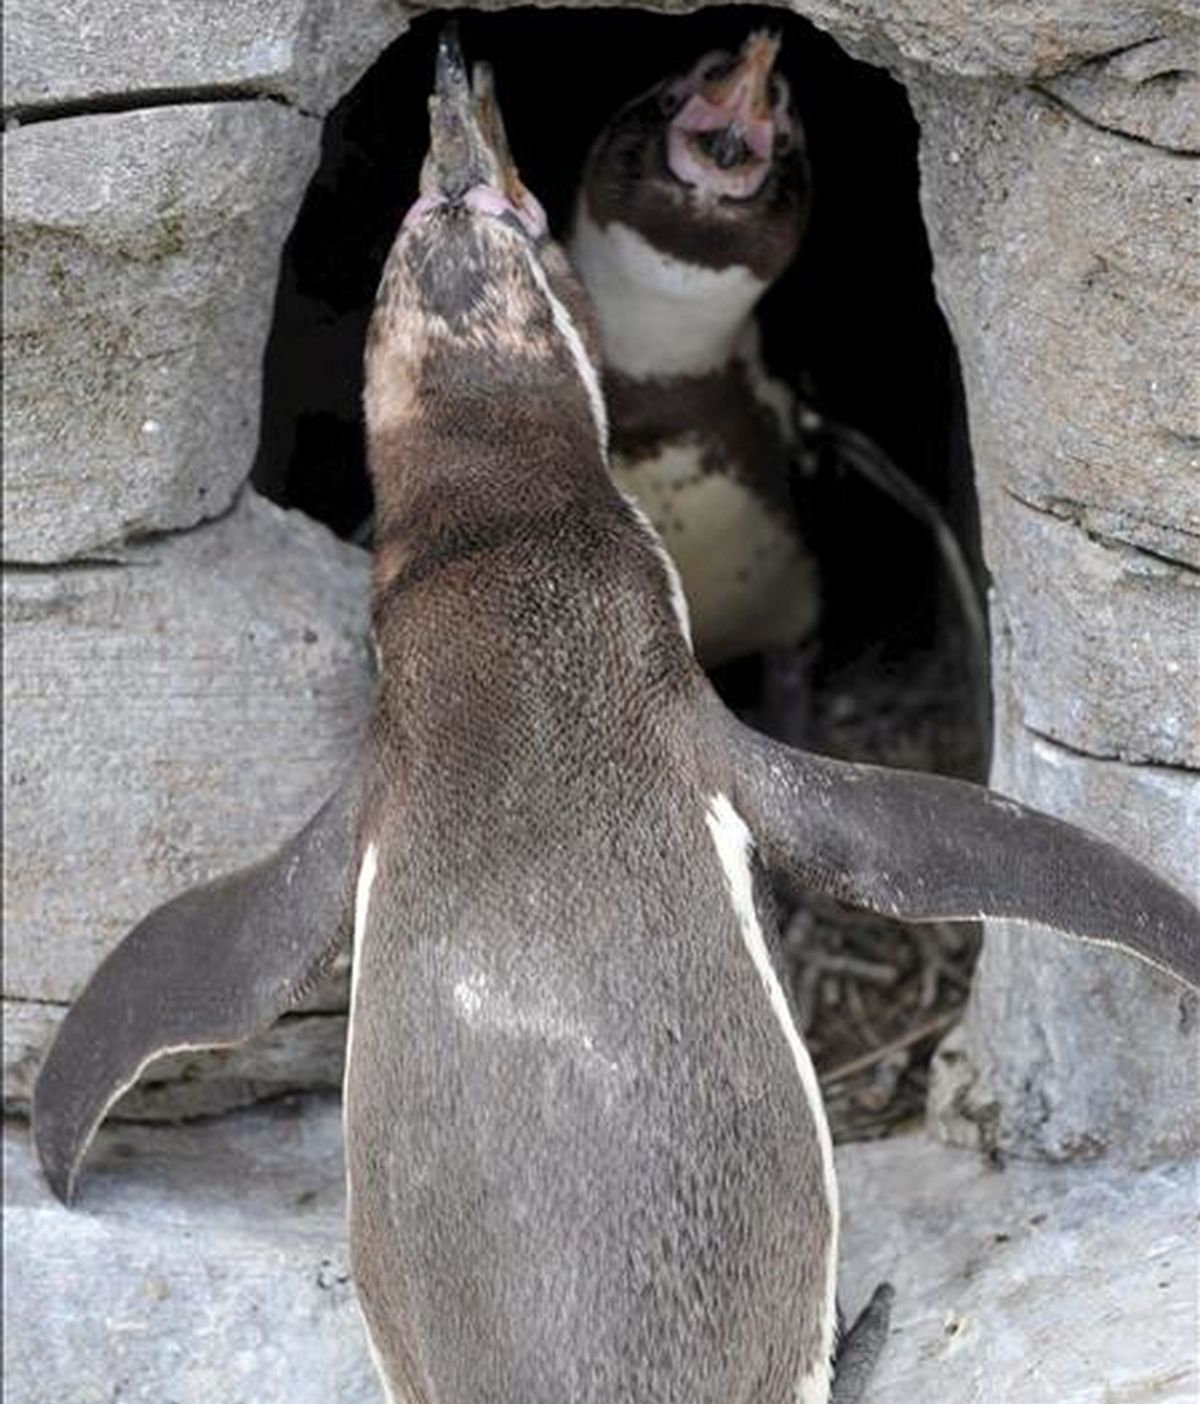 Los pingüinos de Humboldt 'Z-Punkt' y 'Viel-Punkt' son fotografiados en su cueva en el Zoo "Am Meer", en Bremerhaven, Alemania. Dos pingüinos gays adoptaron un huevo que fue rechazado por otros pingüinos hace un tiempo. Ambos criaron al huevo y alimentaron al polluelo. EFE